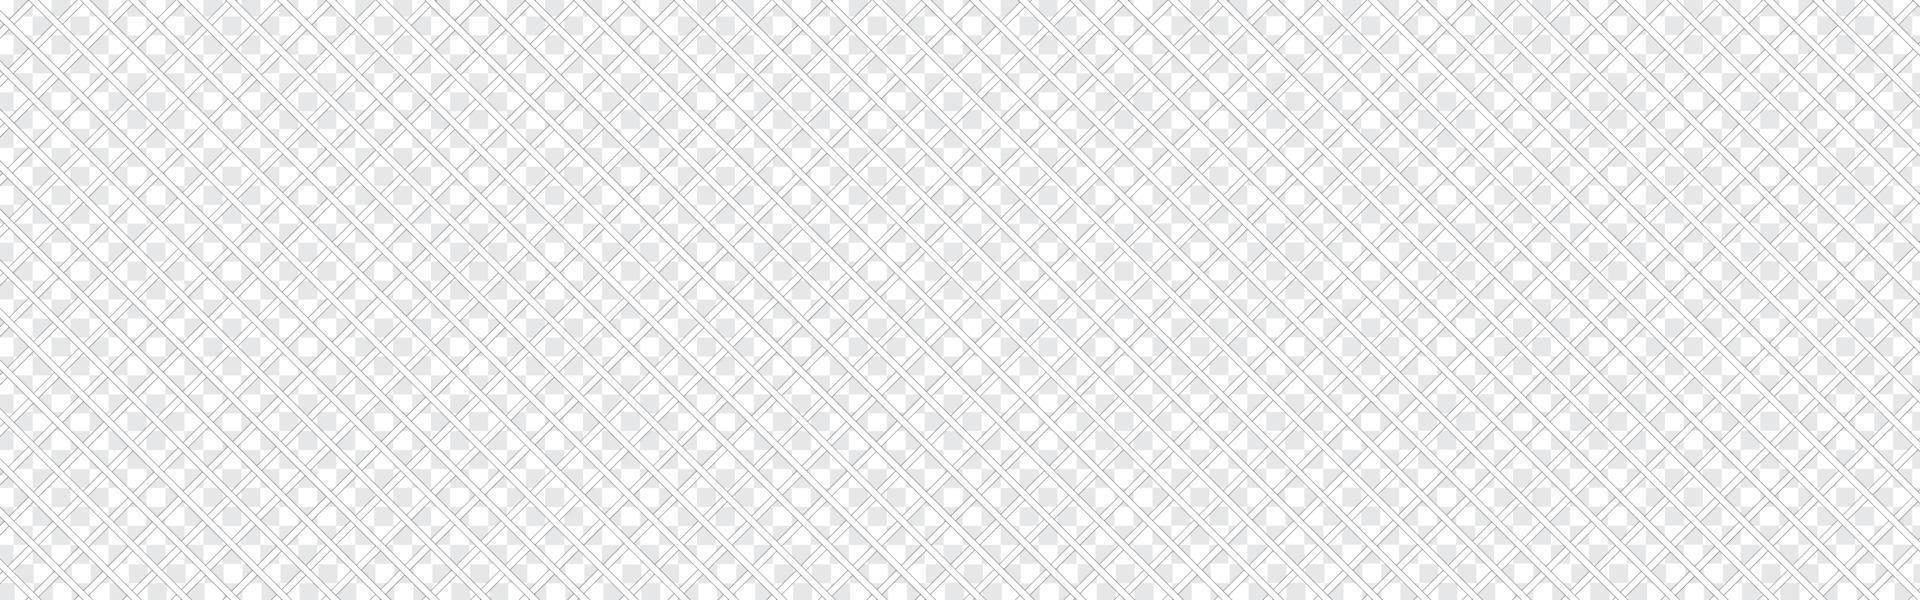 patrón lineal transparente con líneas finas de polietileno, polígonos y. textura geométrica abstracta con cruce de líneas finas. Fondo elegante en colores gris y blanco. vector